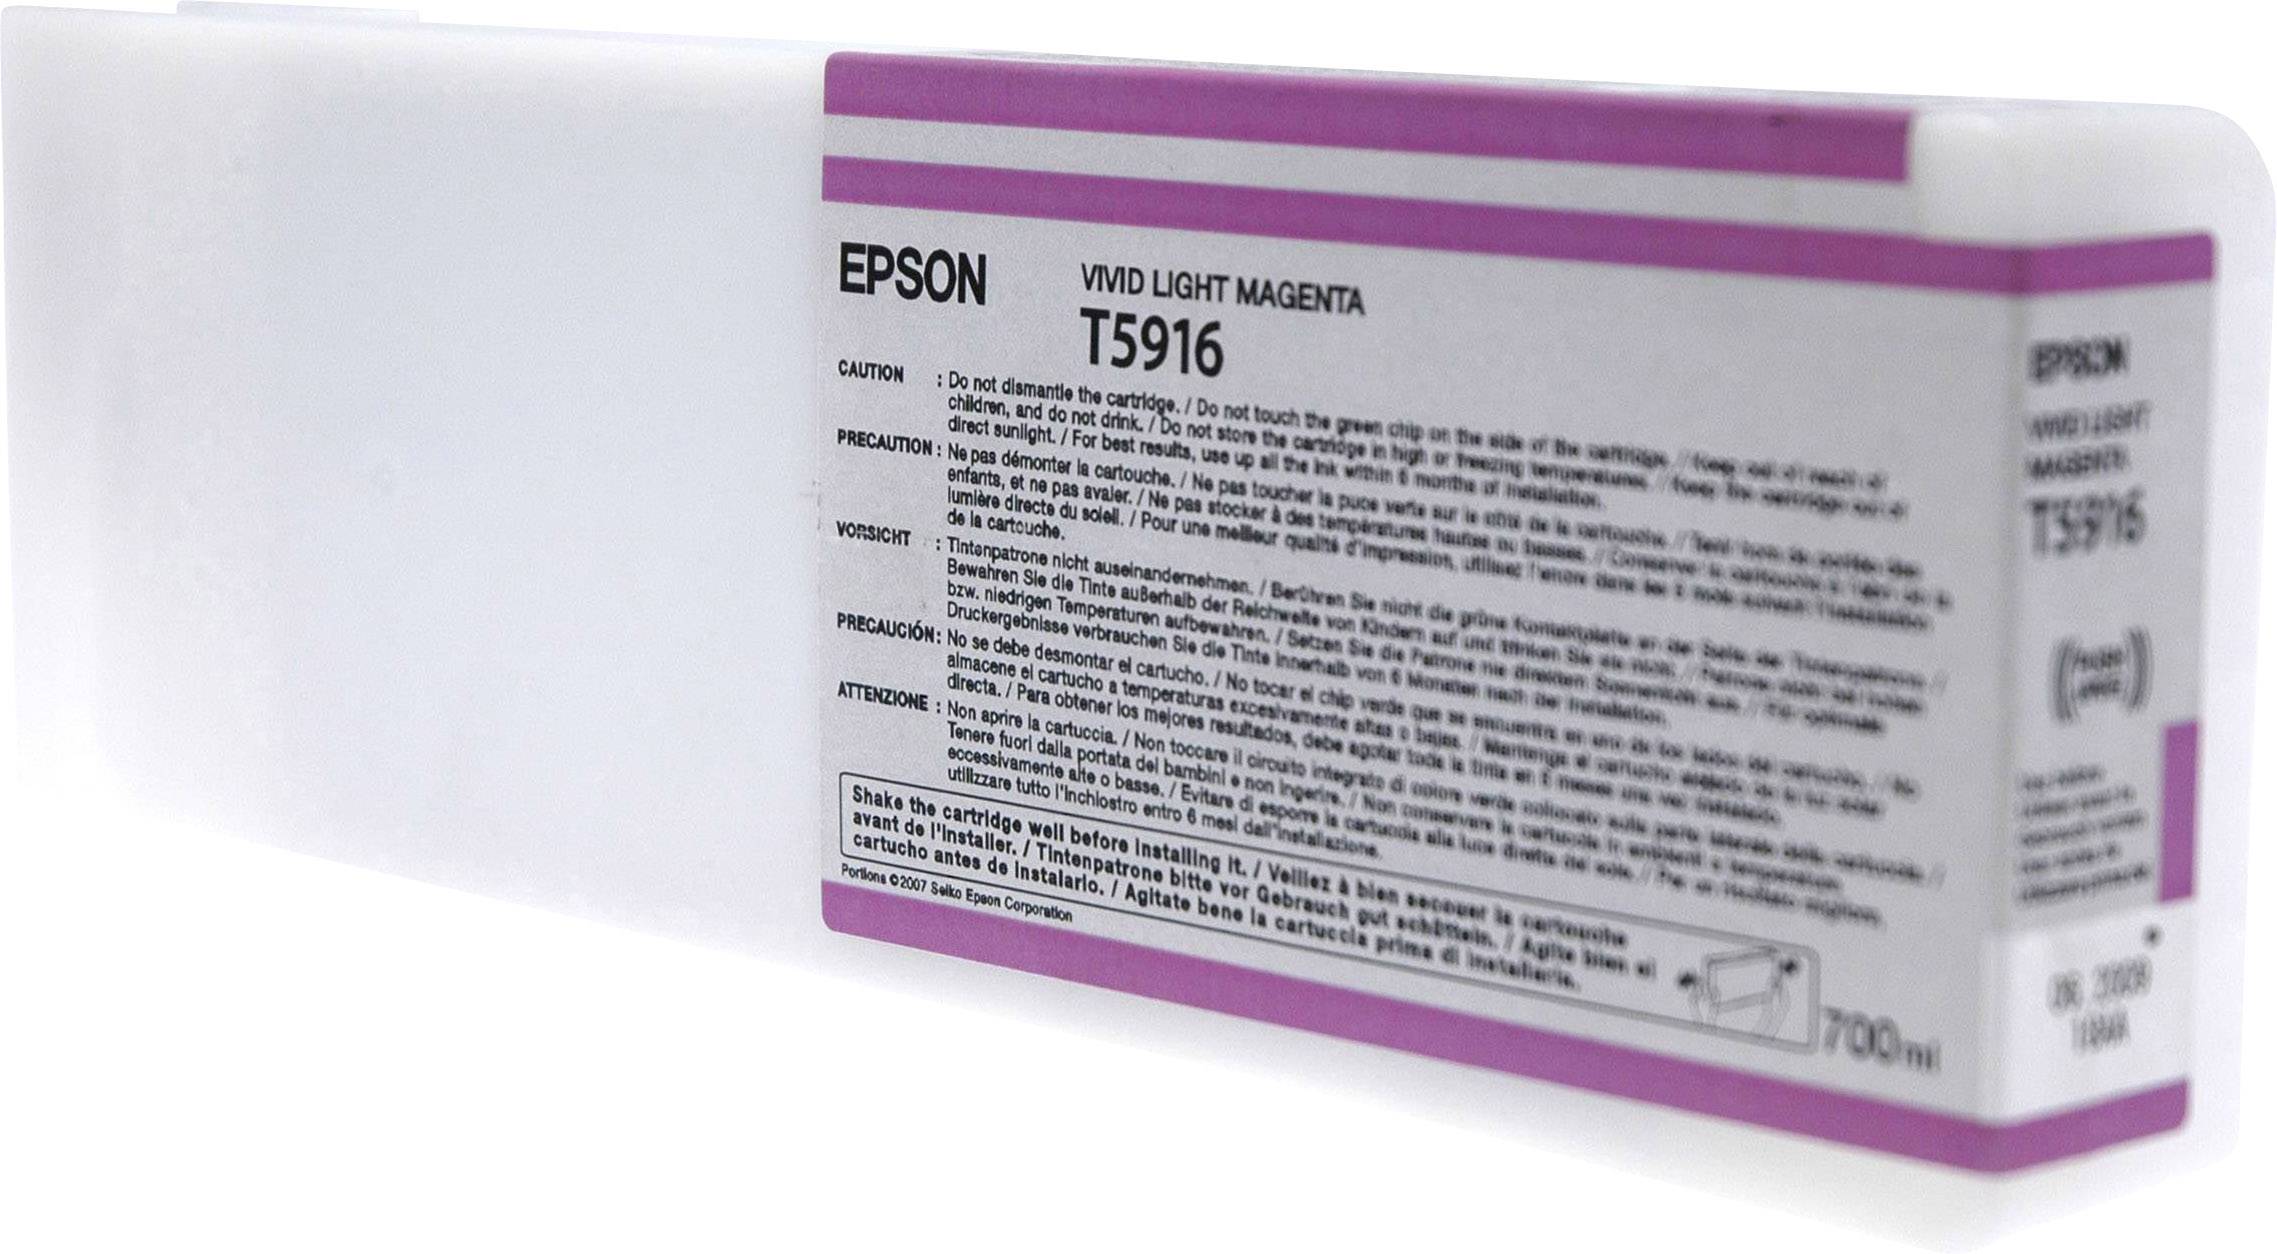 EPSON T5916 Vivid Light Magenta Tintenpatrone